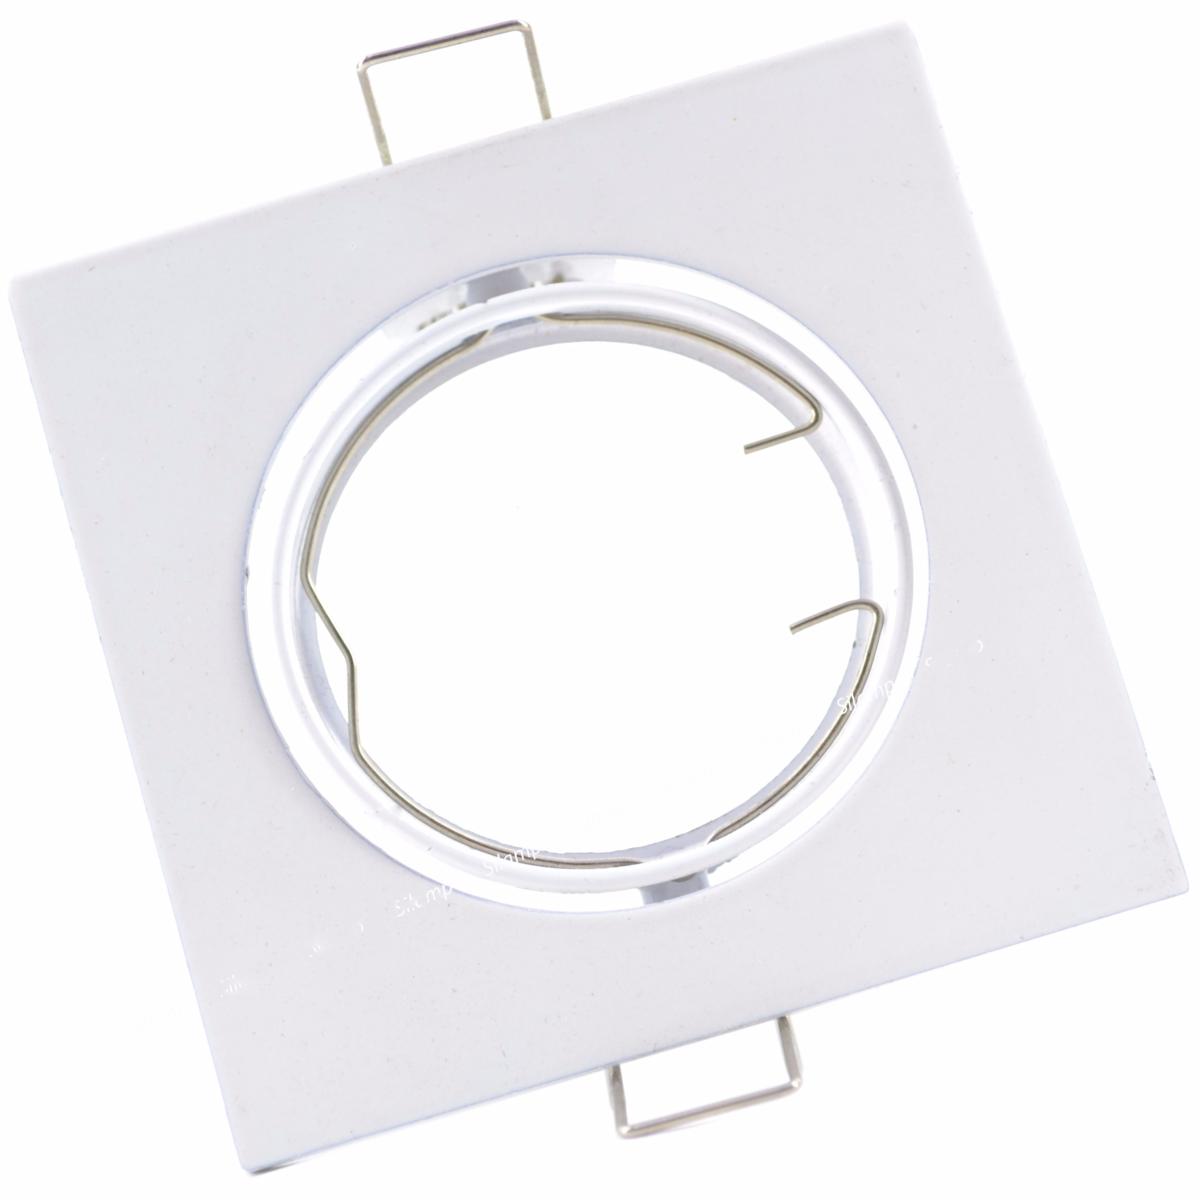 support pour spot LED GU10 de forme carrée et de couleur blanche